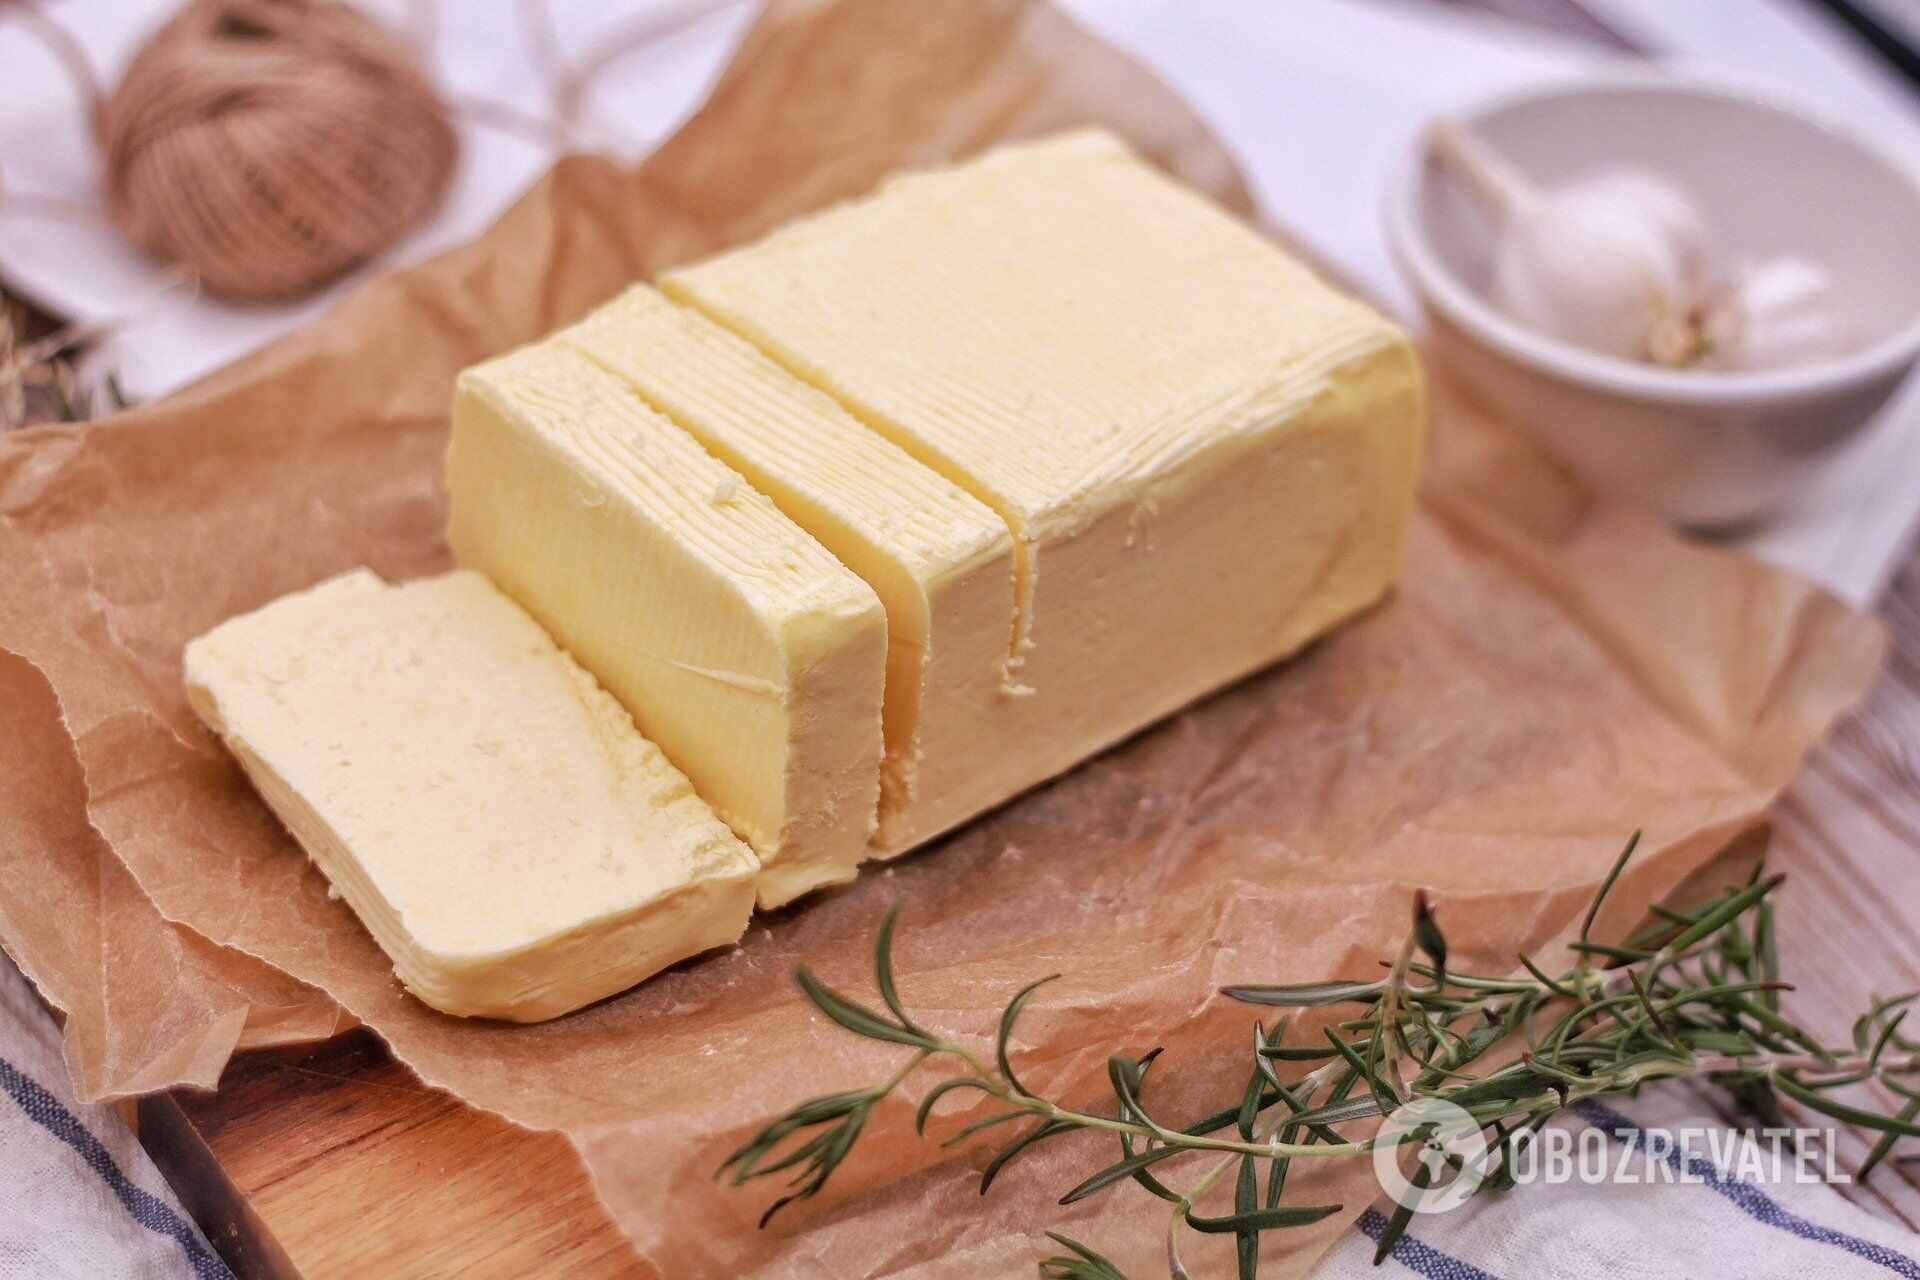 Фальсификаты масла и сыра нашли в Кировоградской области